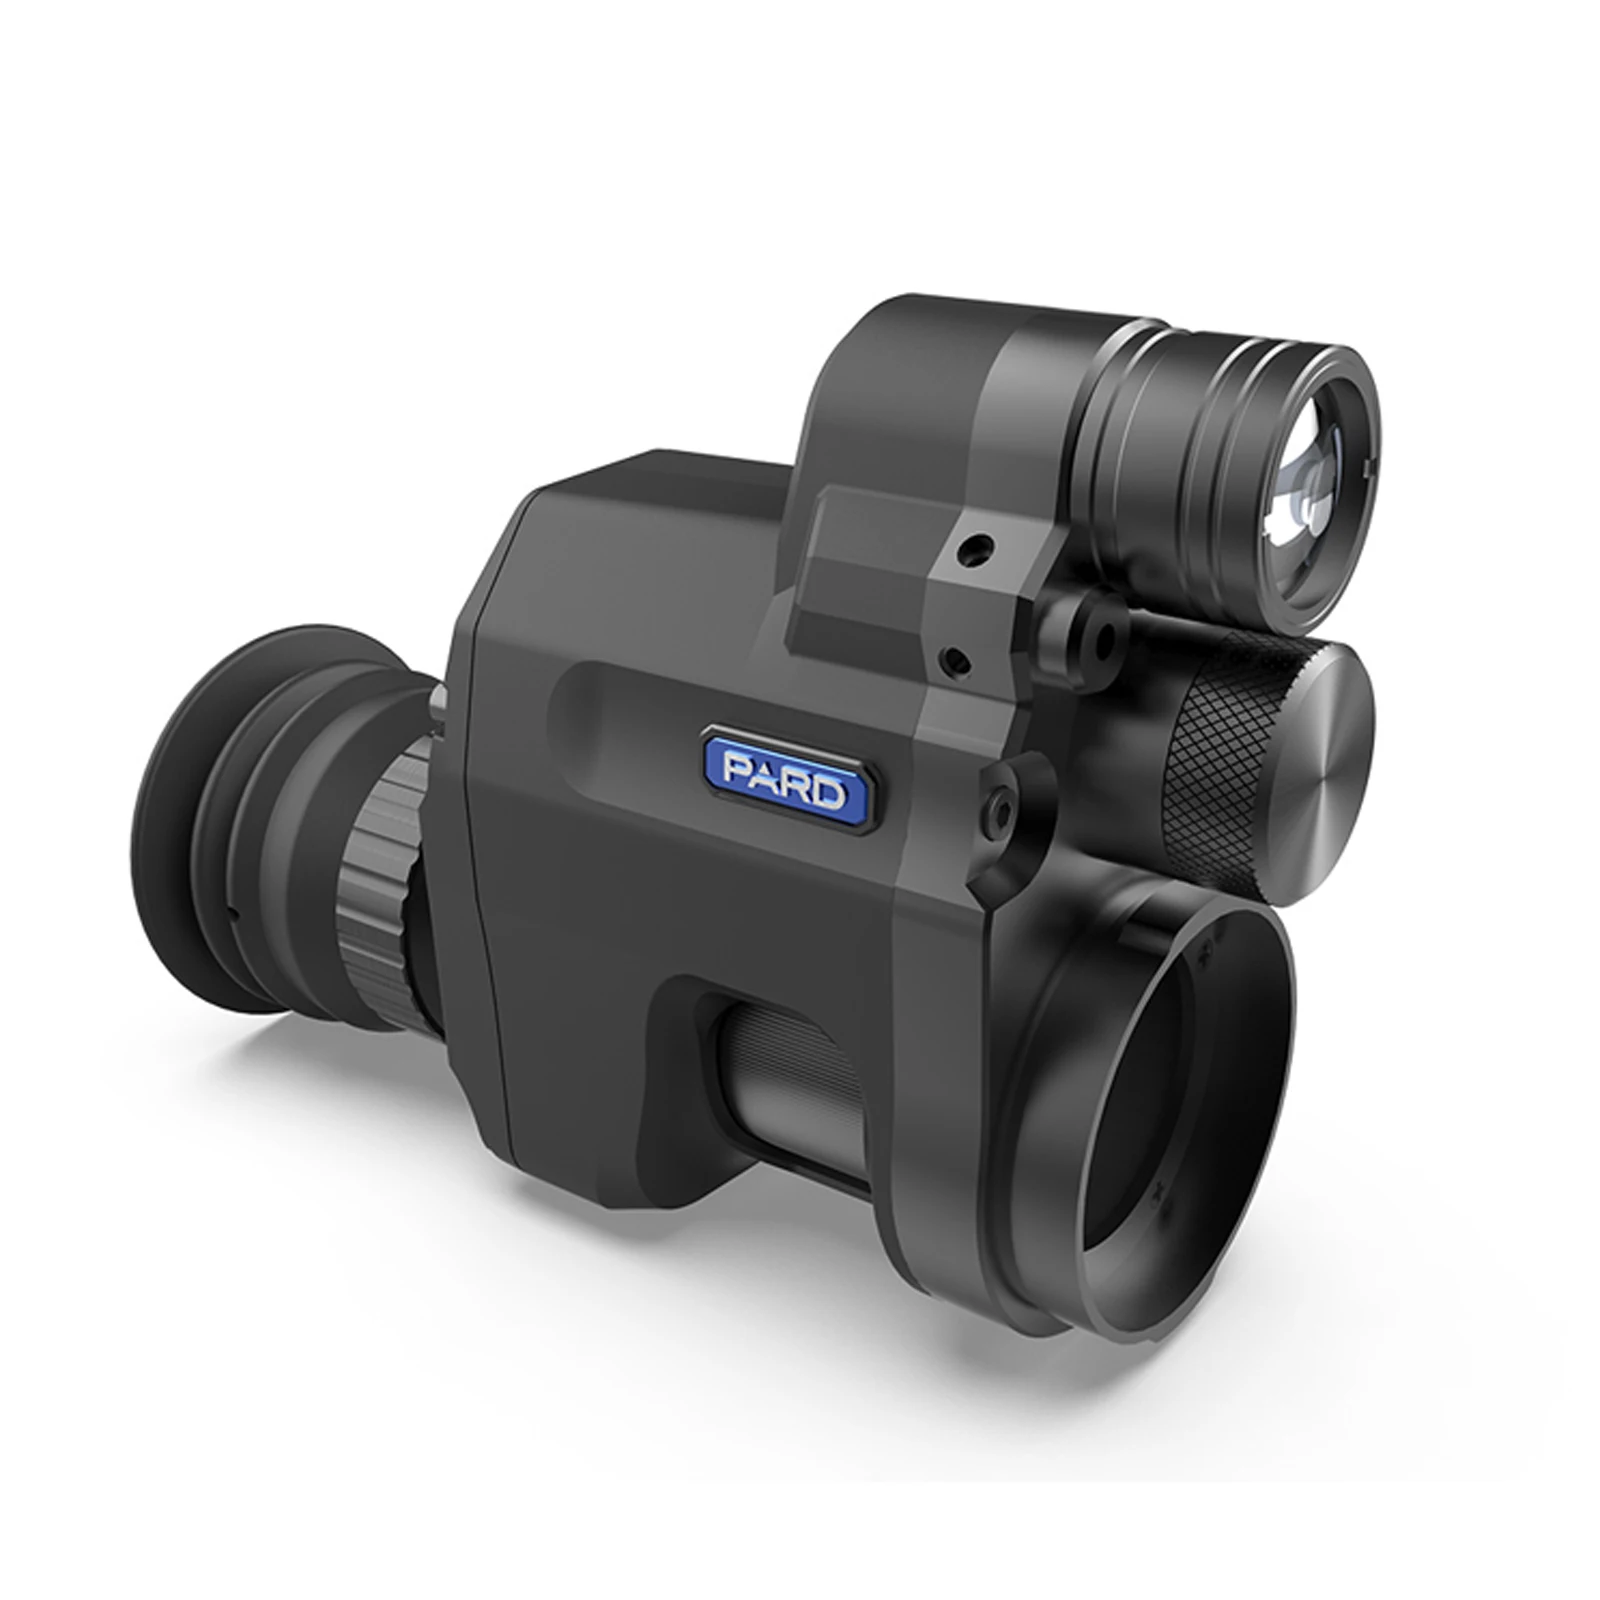 PARD NV007V Clip-on Gece Görüş Kapsamı 4x-14x Monoküler dijital kamera Avcılık İçin 300m IR 1920*1080 Video Çözünürlüğü 850/940nm